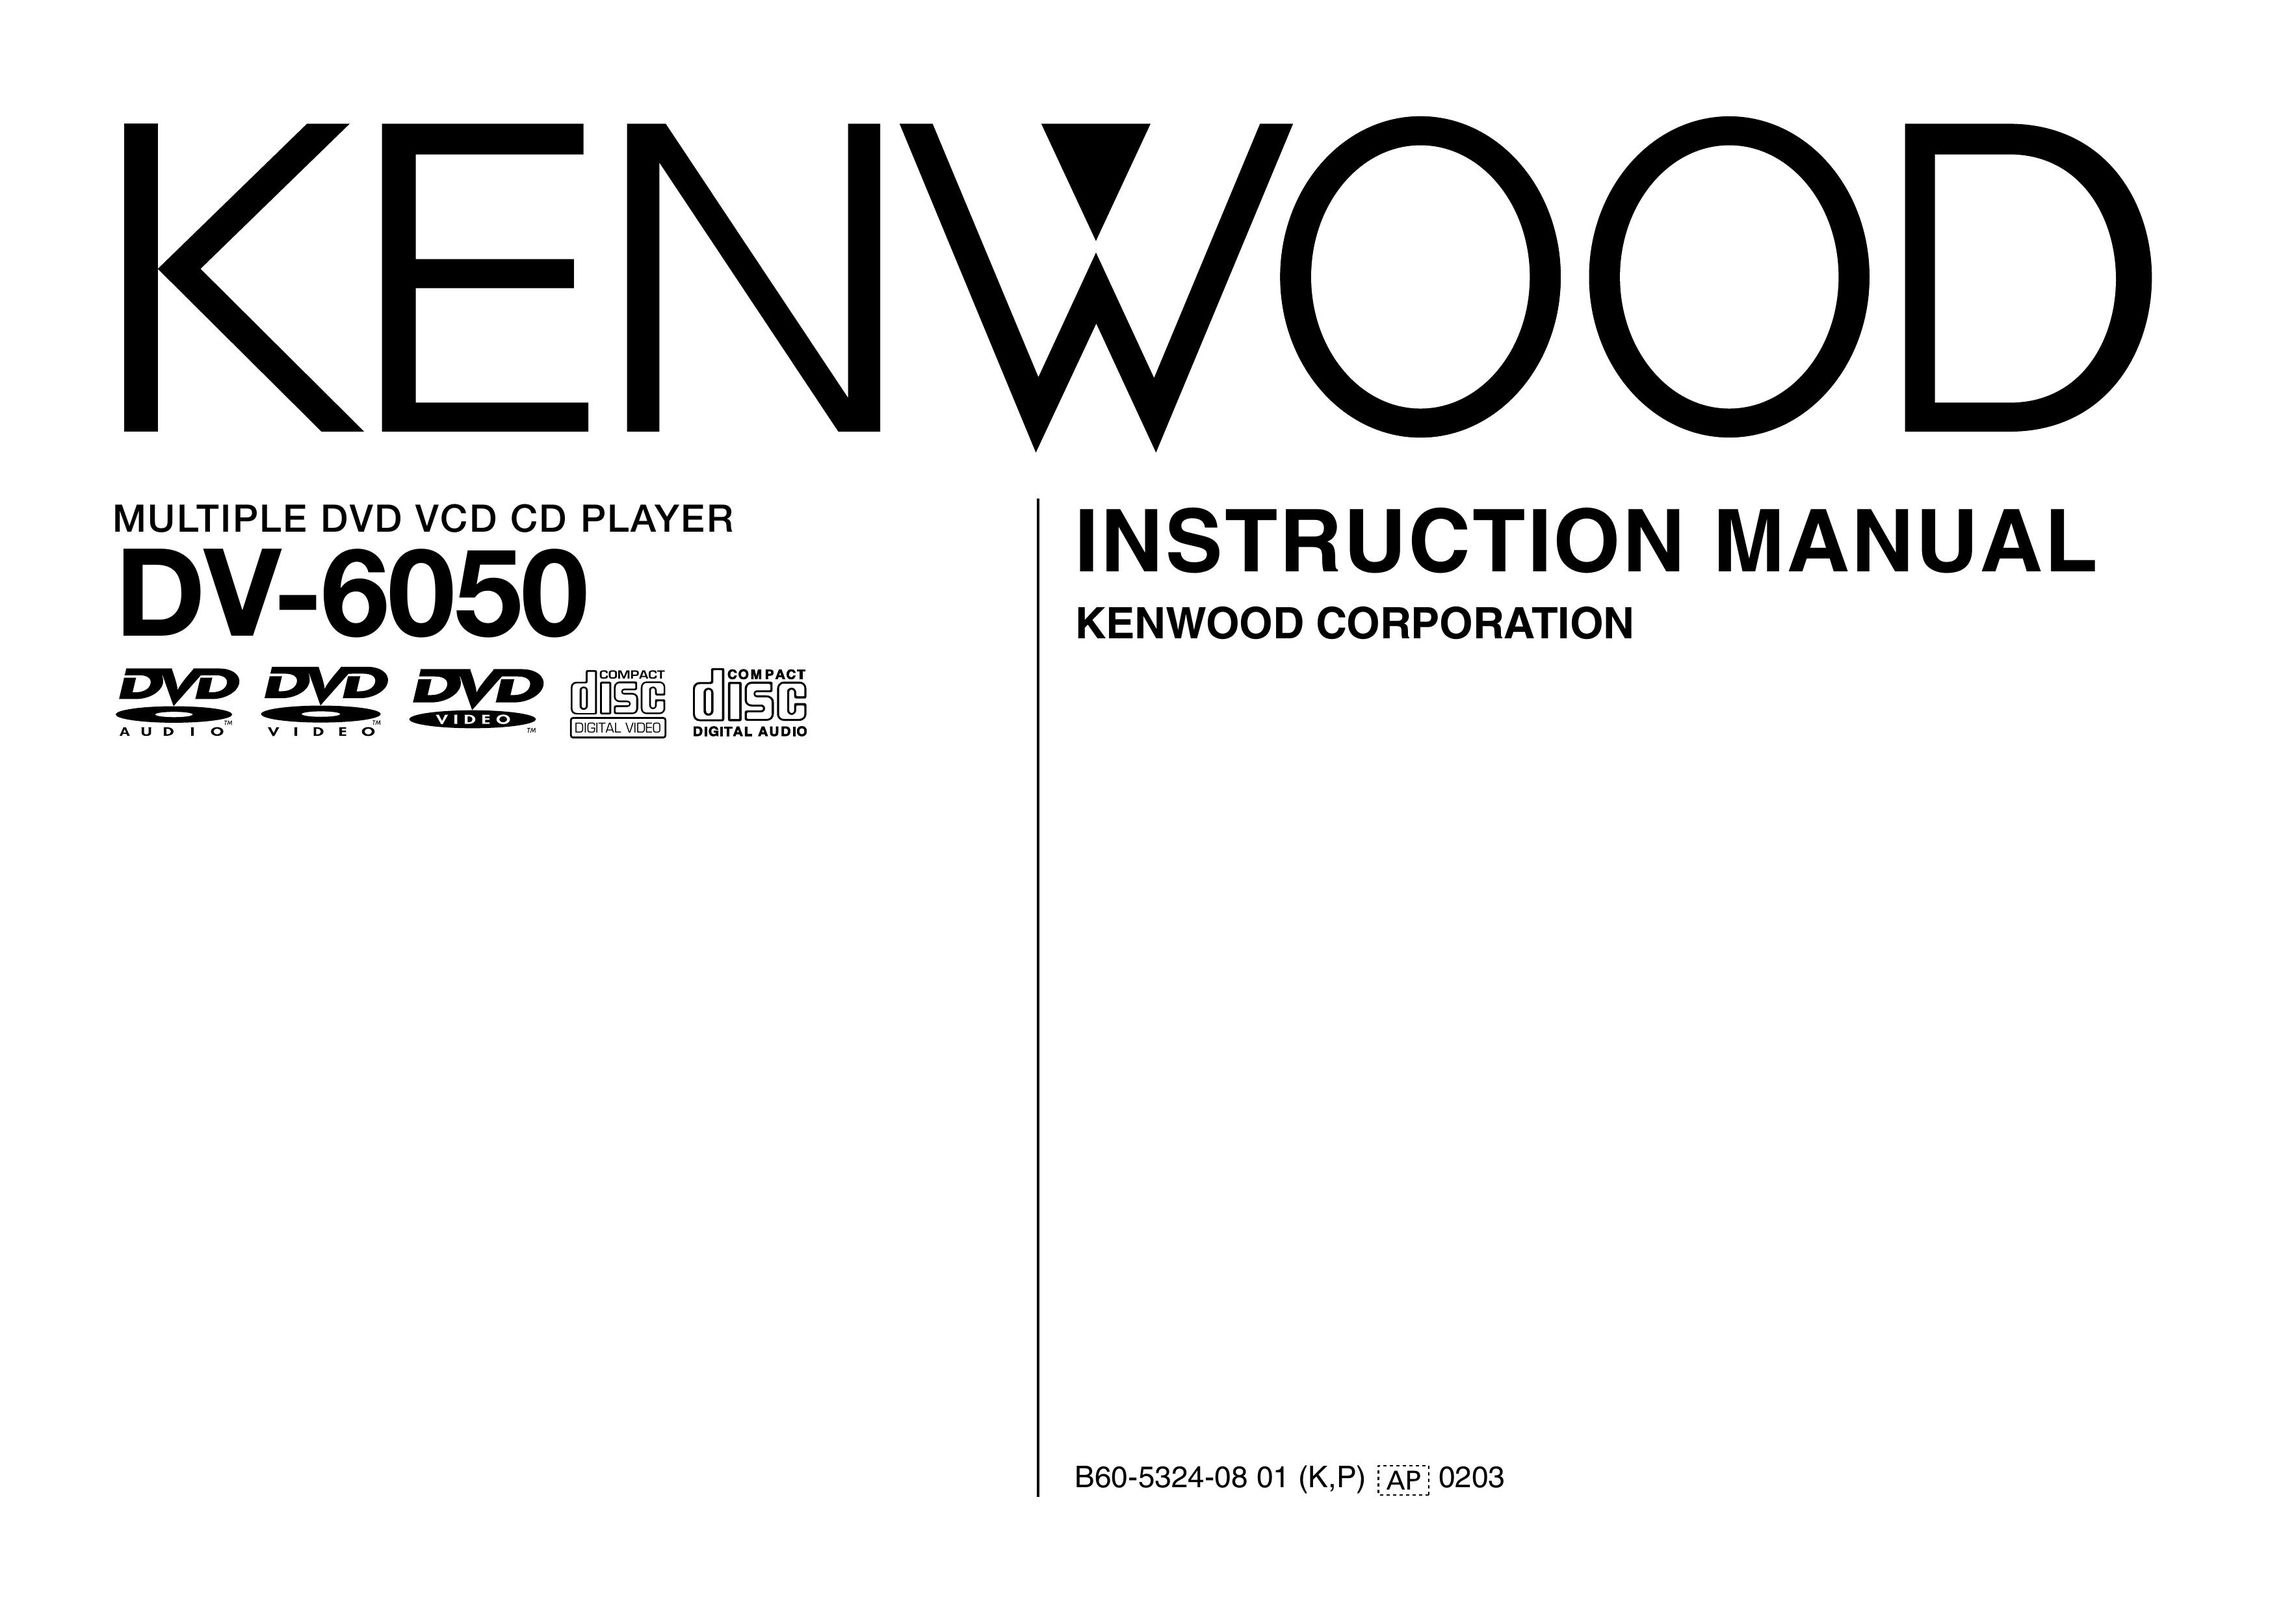 Kenwood DV-6050 DVD Player User Manual